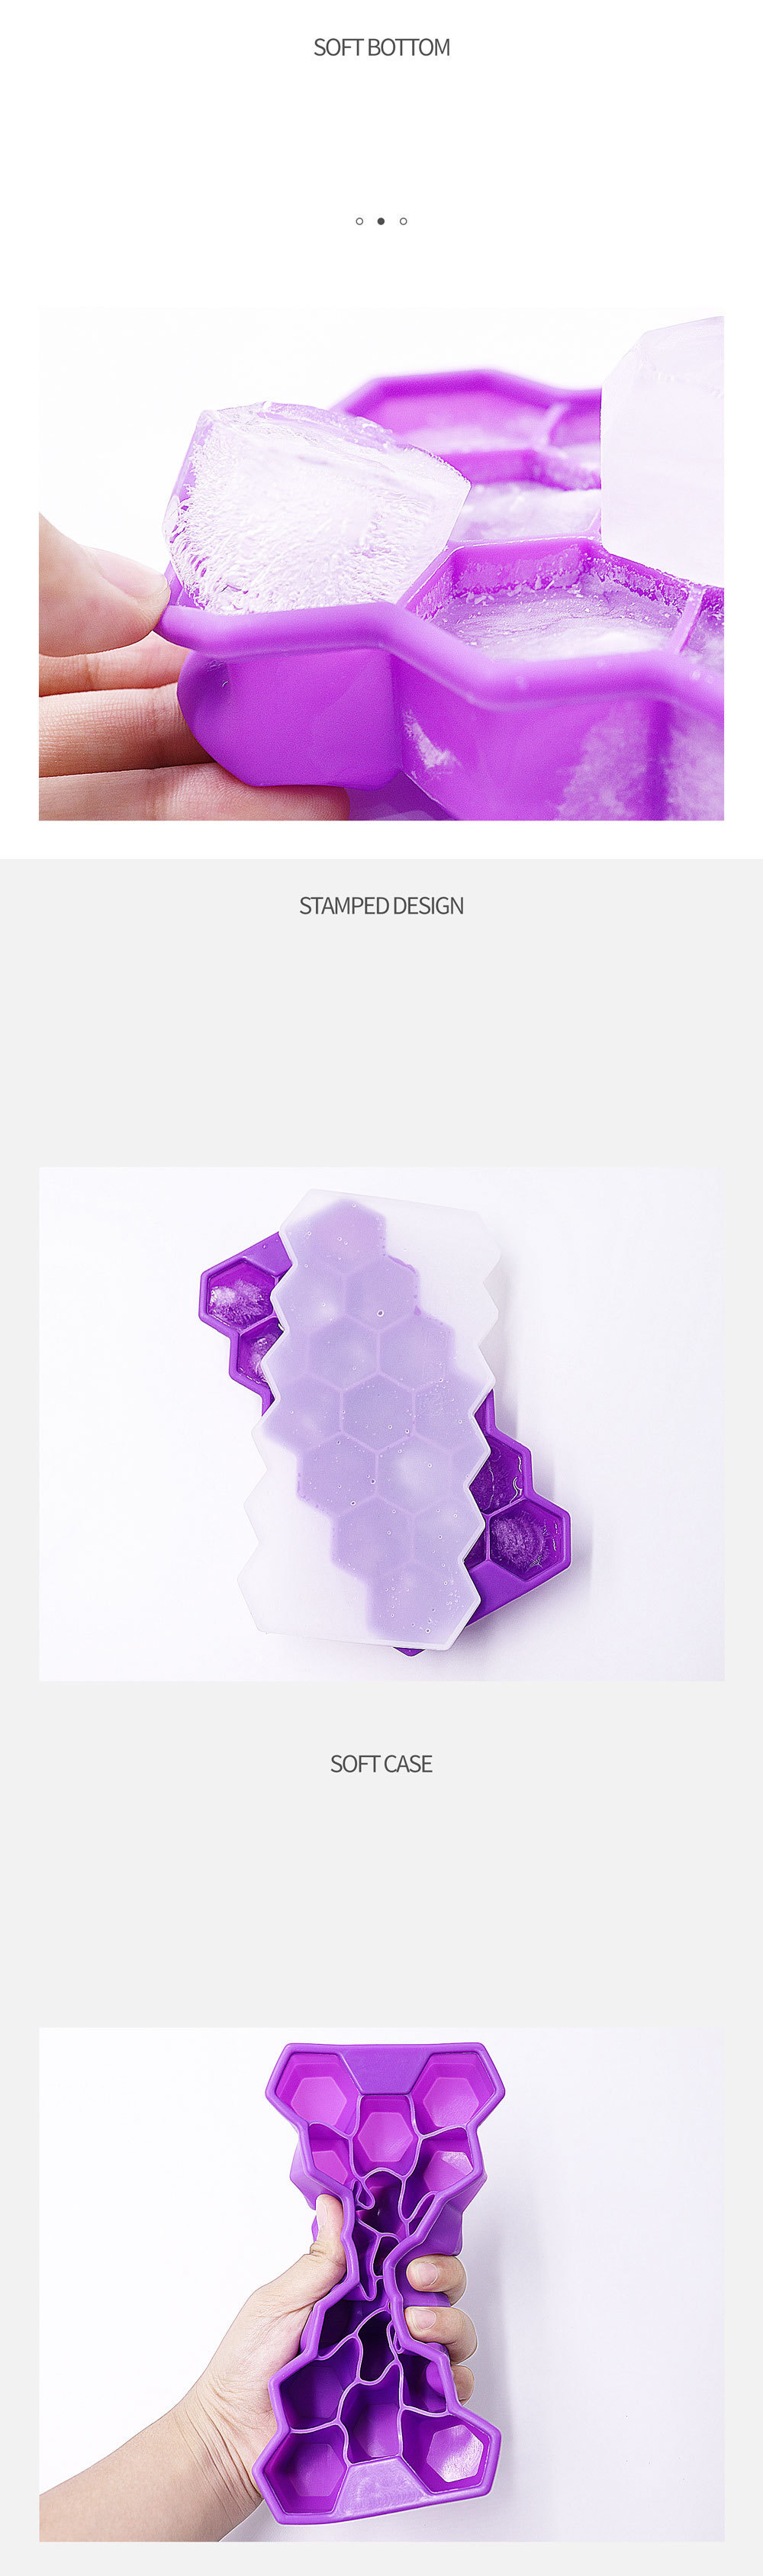 17 Cavity Eco-vriendelijke siliconen ijsbakjes Easy Release Ice Cube Mold